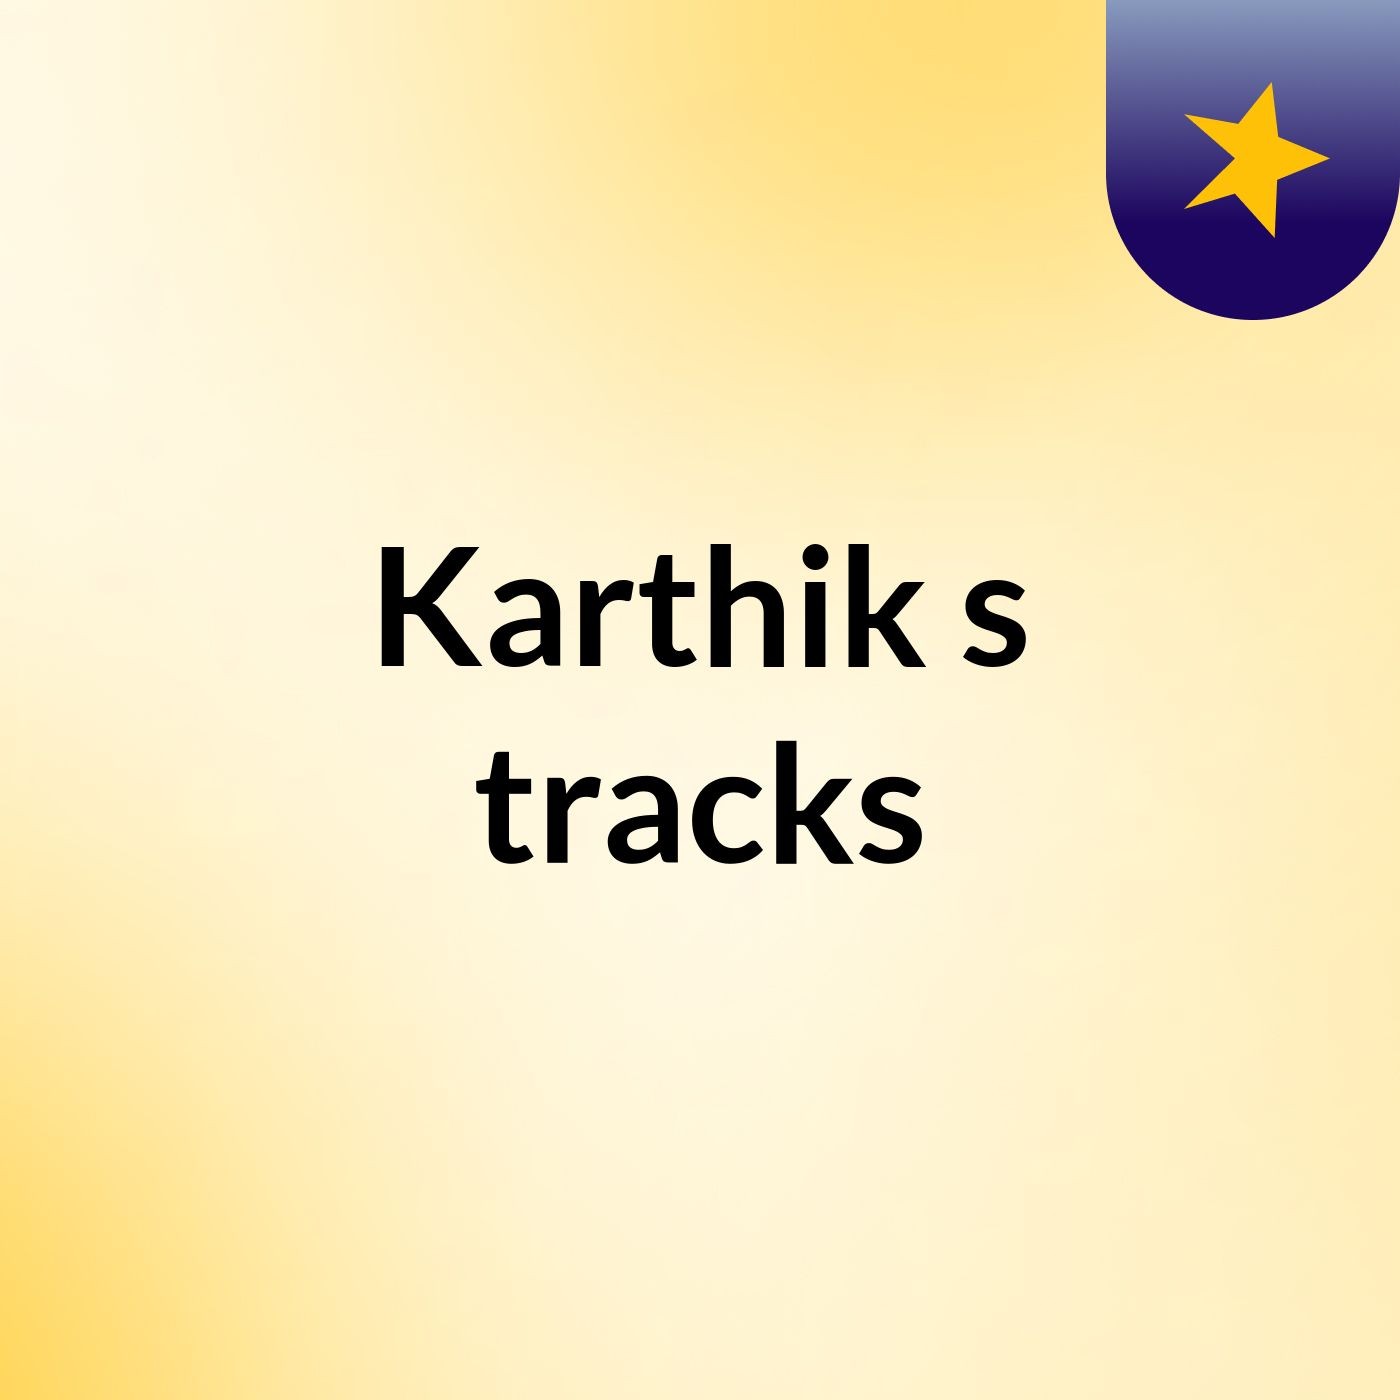 Karthik's tracks